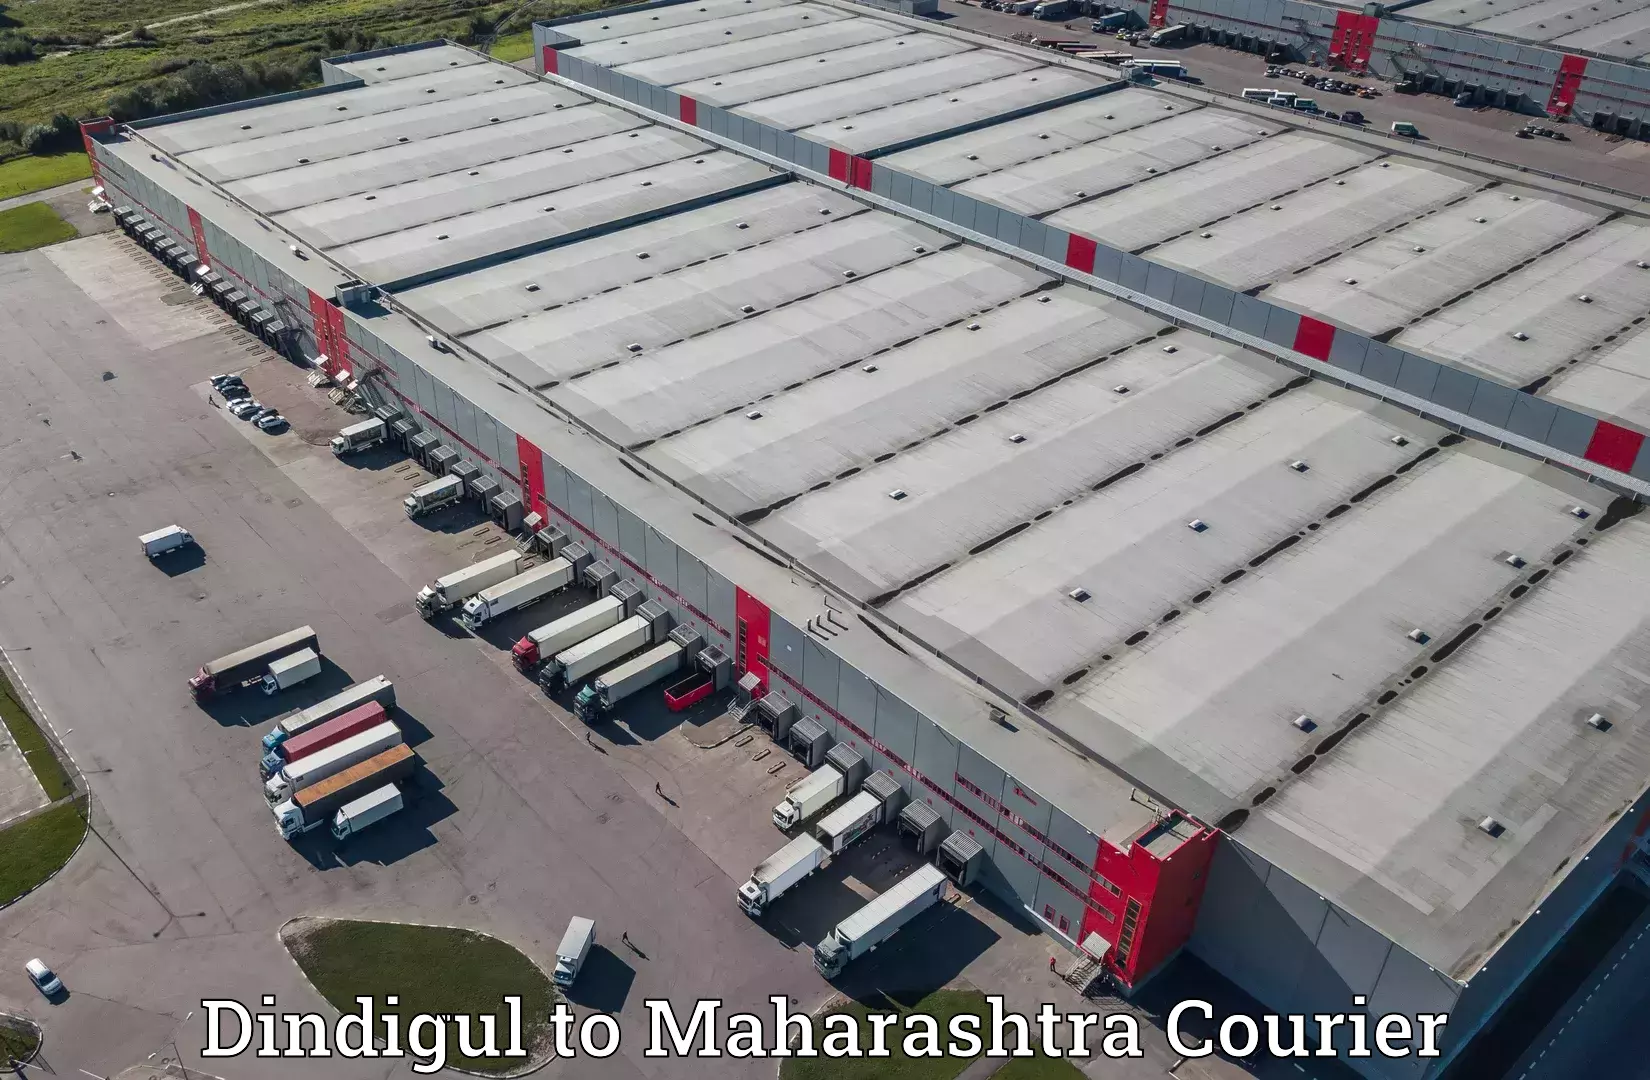 On-demand shipping options Dindigul to Khandala Pune